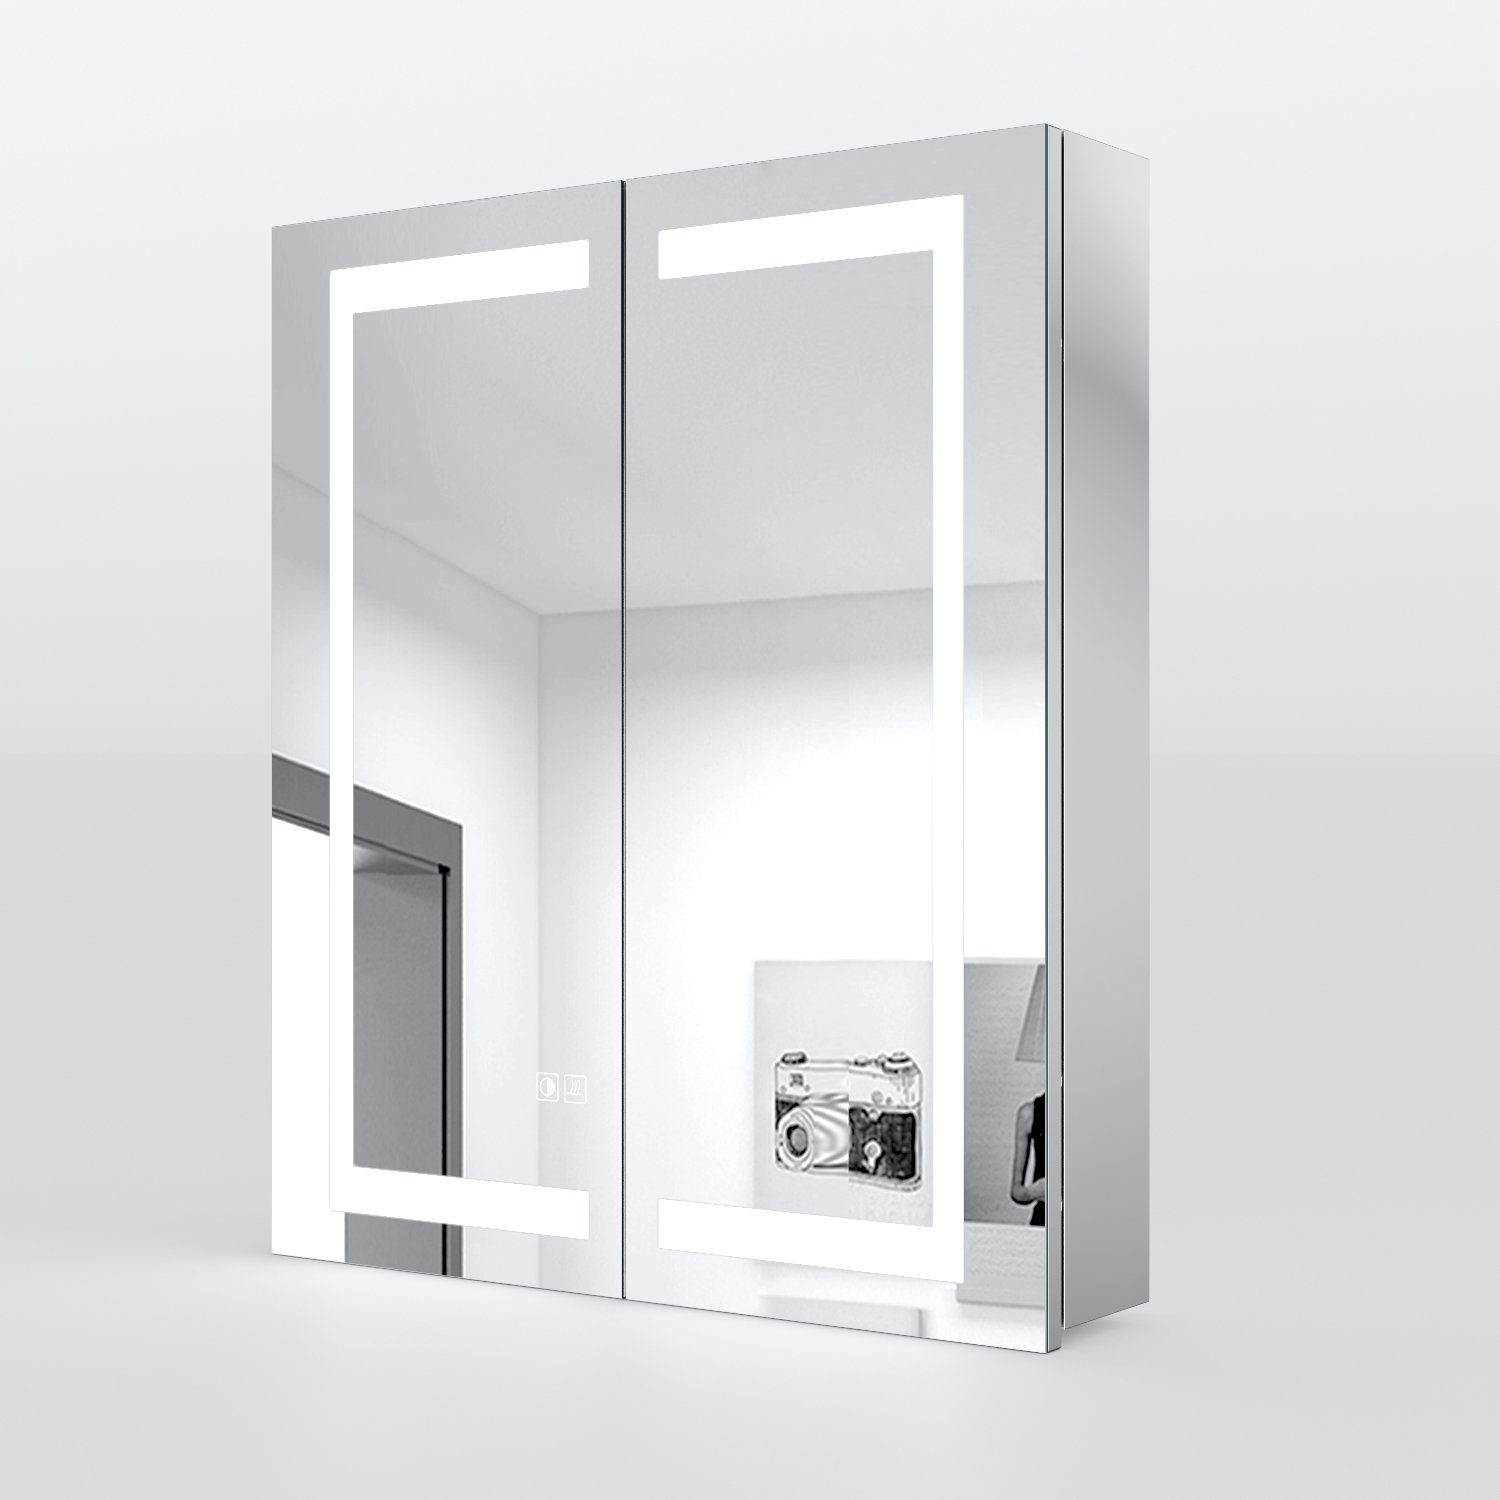 SONNI Badezimmerspiegelschrank Spiegelschrank 60x70x13cm Edelstahl mit  LED-Beleuchtung Bad IP44 Touch-Schalter, Wasserdichte Rasiersteckdose mit  Kappe, Beschlagfrei